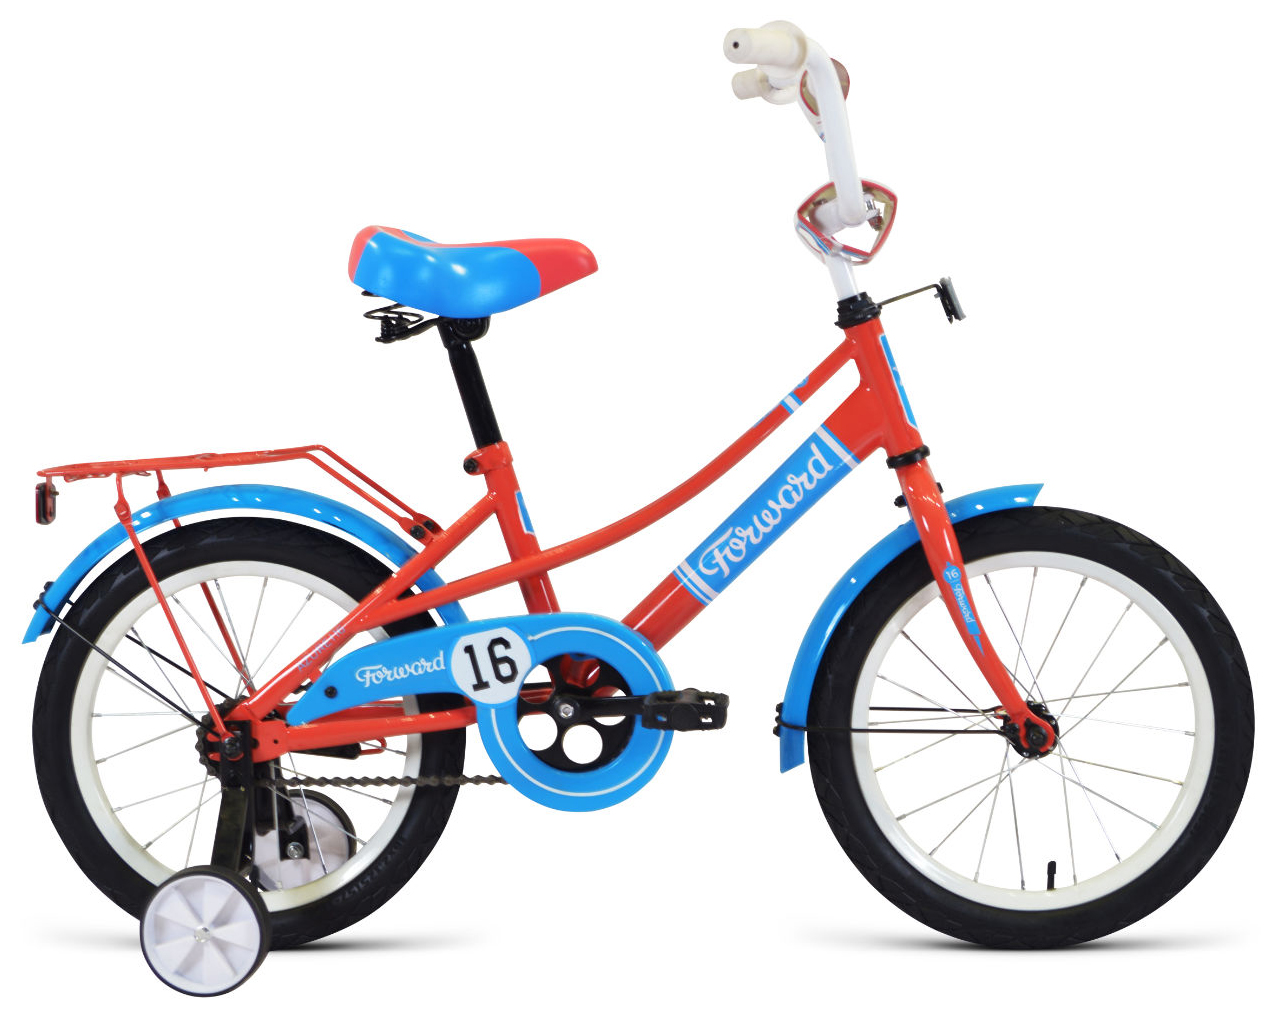  Отзывы о Детском велосипеде Forward Forward Azure 16 (2021) 2021